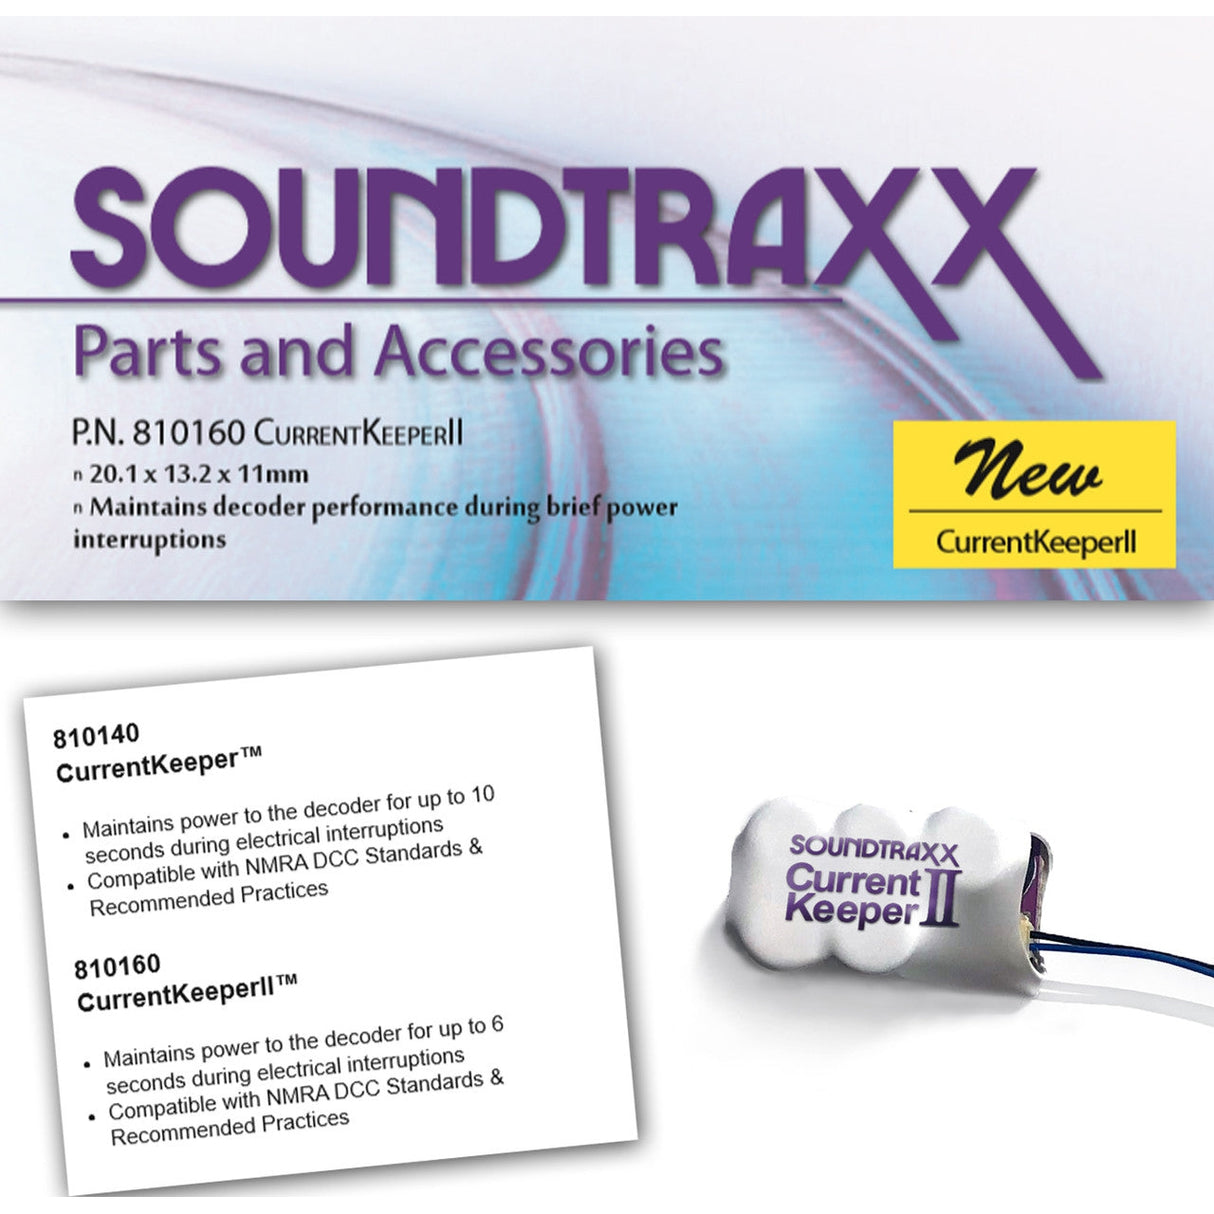 Soundtraxx CurrentKeeperII